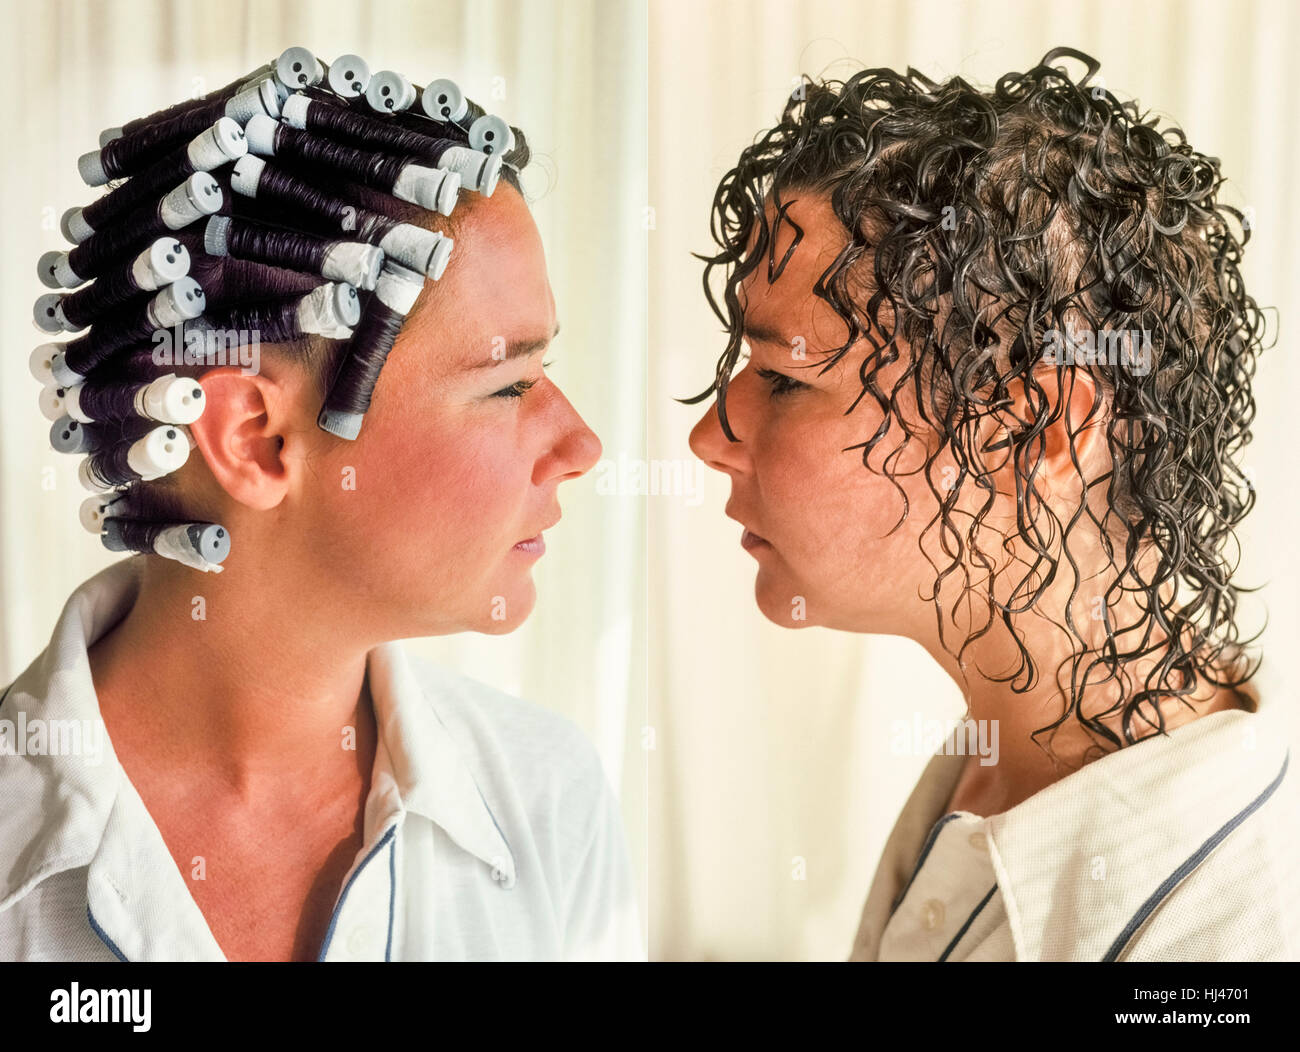 Cette image composite montre une jeune femme de race blanche en deux étapes  d'un traitement de la coiffure couramment appelé un "permanente" ou "perm'  pour créer des cheveux bouclés par moyens mécaniques